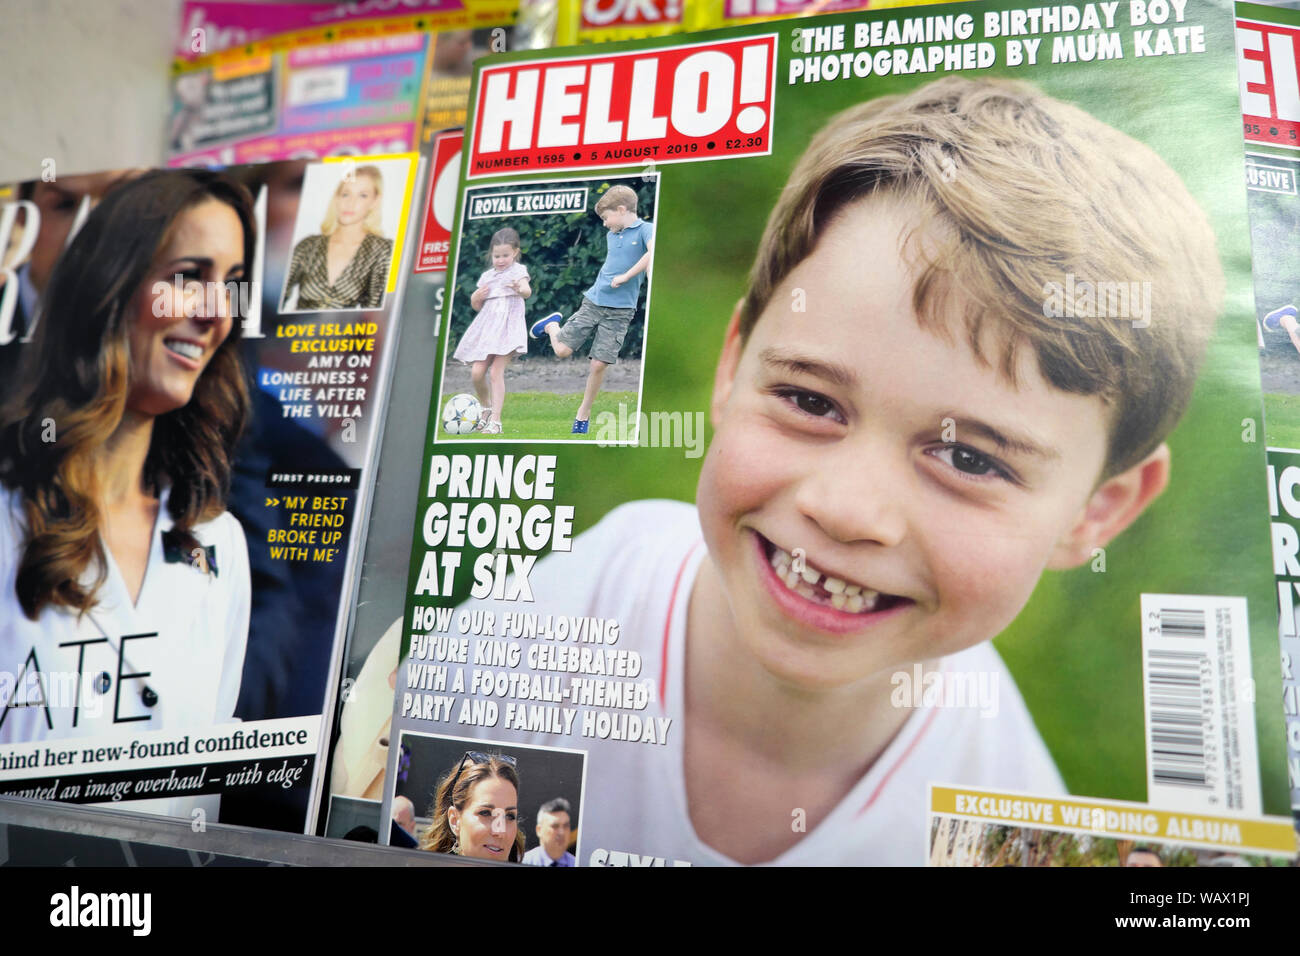 Prince George um sechs auf seinem Geburtstag und Mutter Kate Herzogin von Cambridge auf der vorderen Abdeckung des Hallo! Magazin am Kiosk Regal London UK 2019 Stockfoto